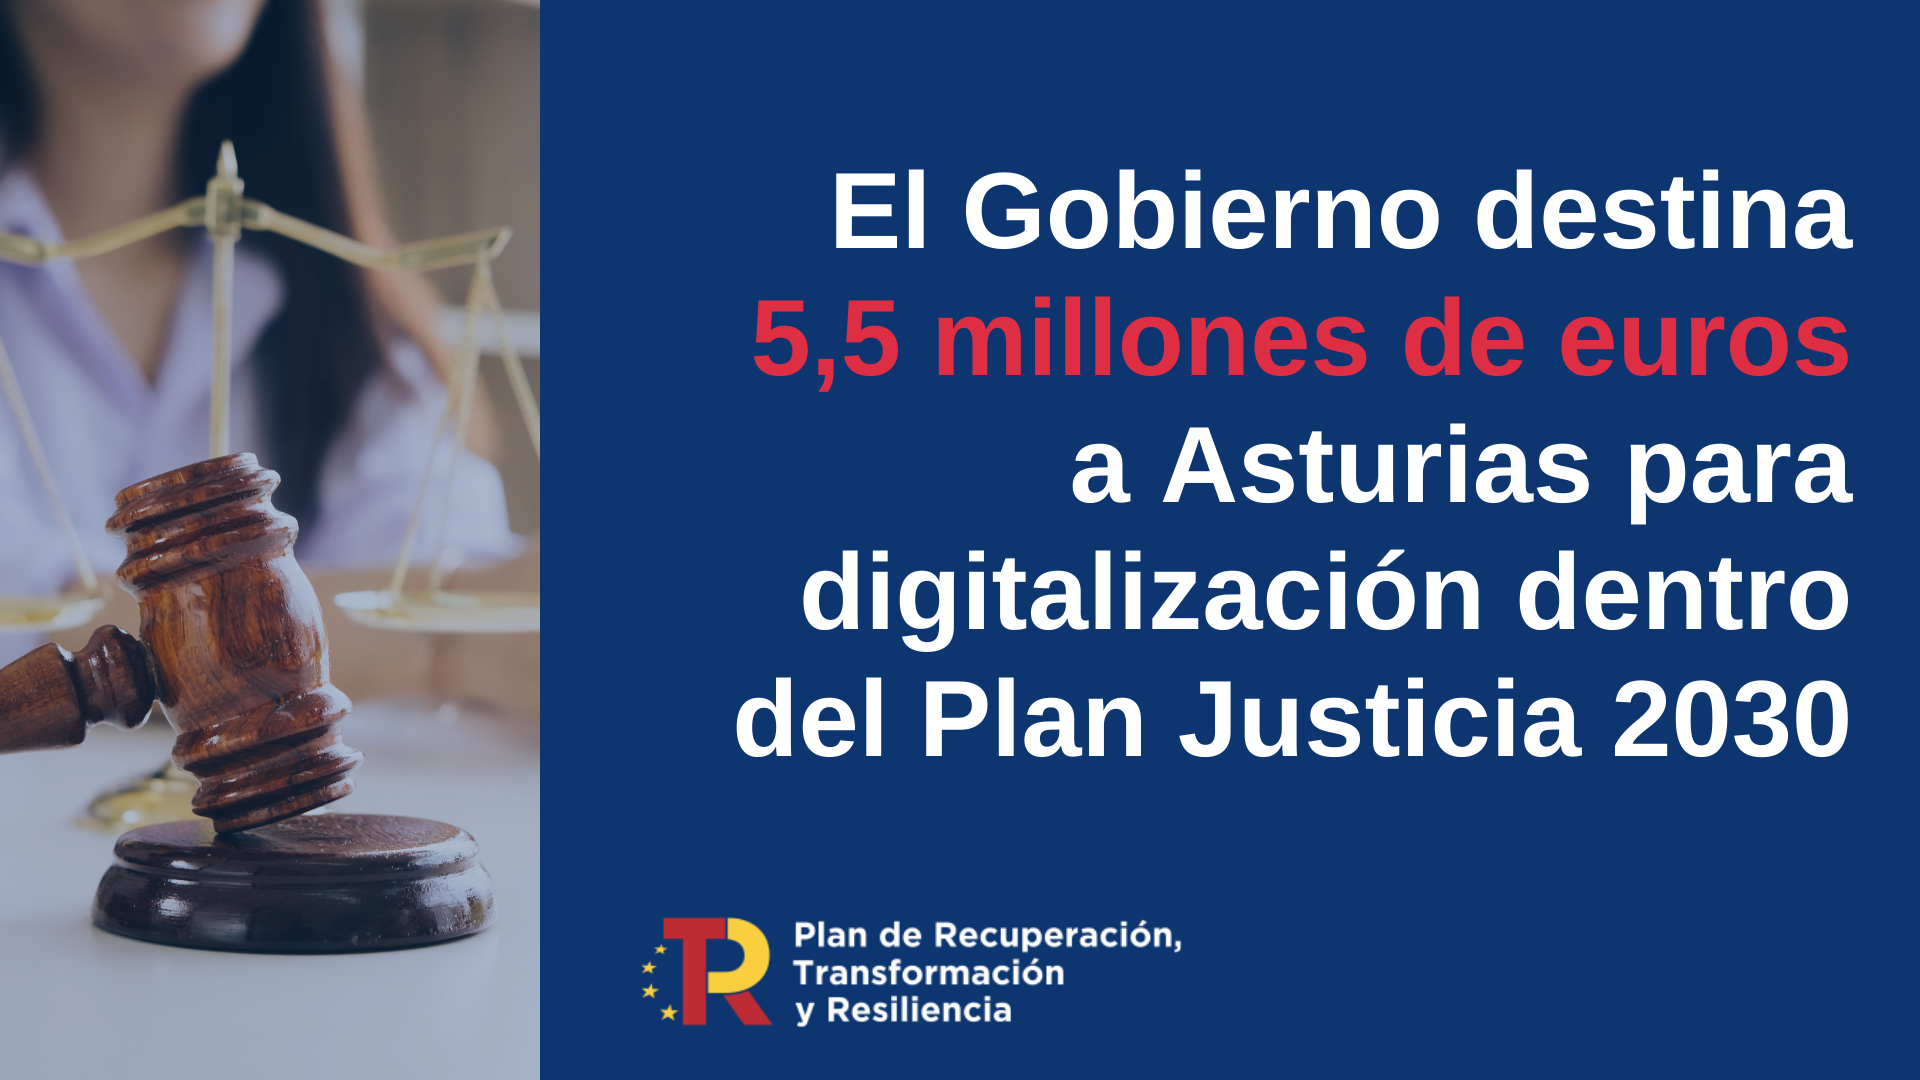 El Gobierno destina más de 5,5 millones de euros a Asturias de los fondos europeos para Justicia